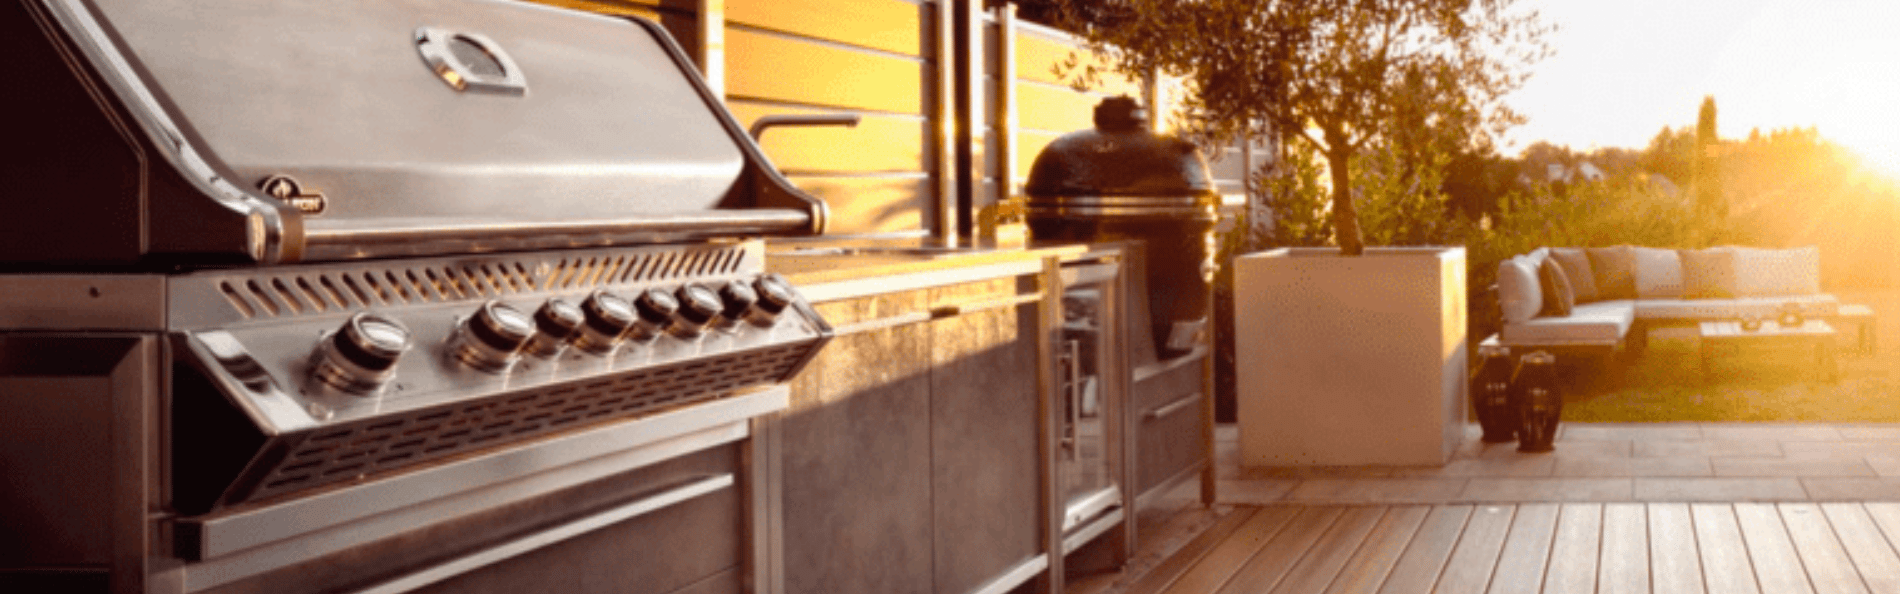 Outdoor Küche von Burnout kitchen